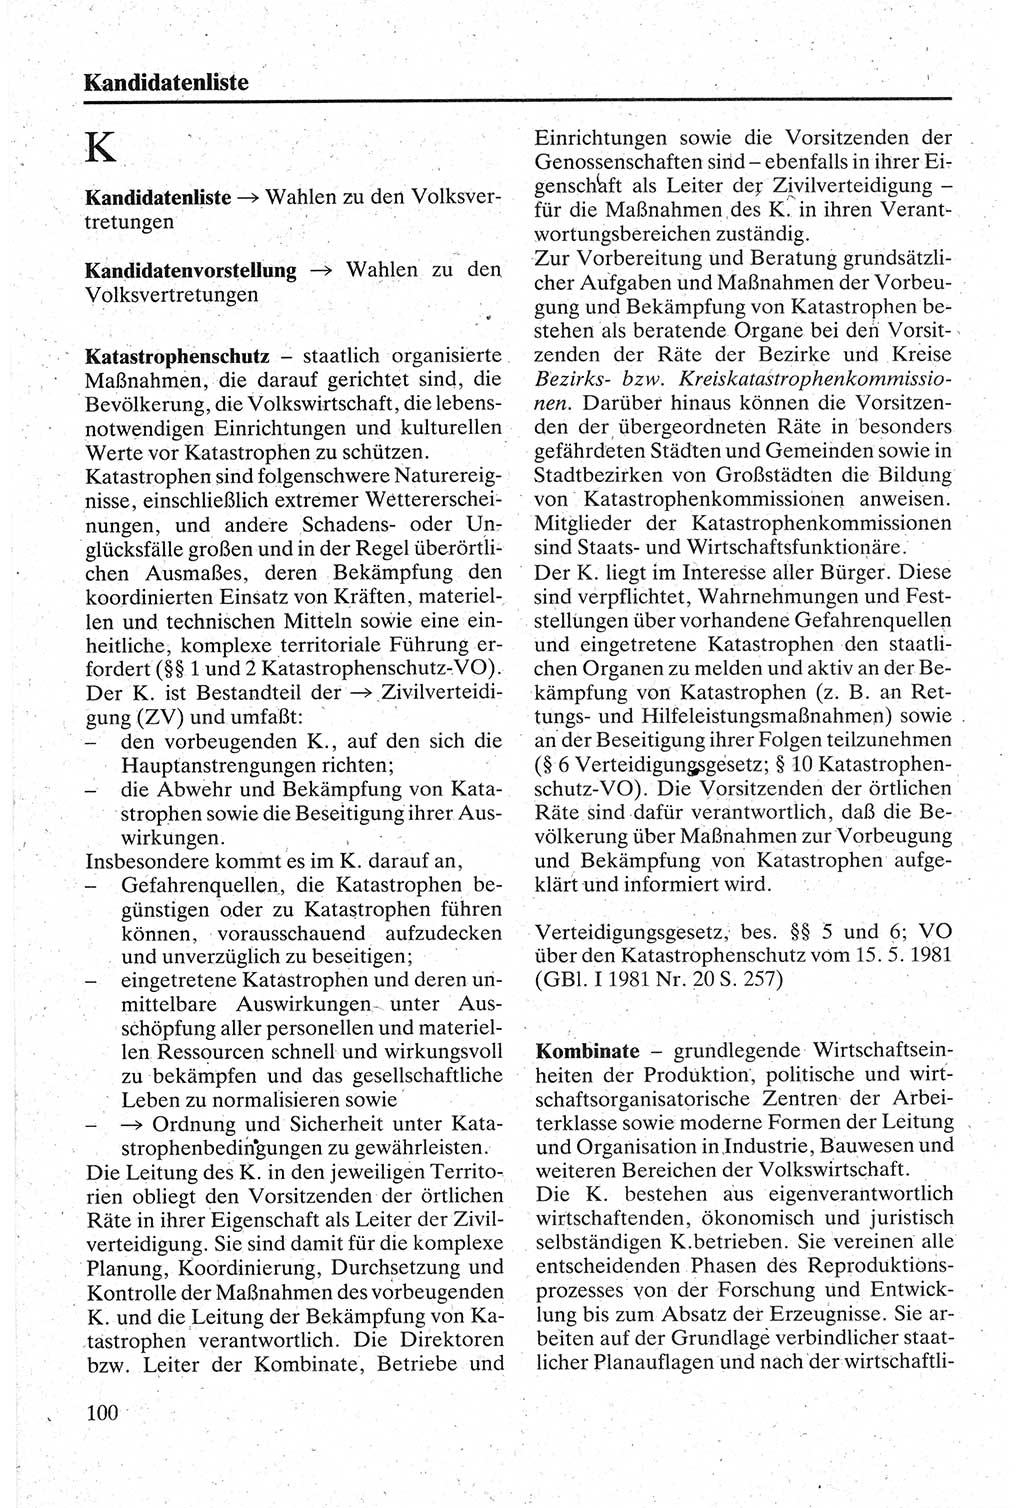 Handbuch für den Abgeordneten [Deutsche Demokratische Republik (DDR)] 1984, Seite 100 (Hb. Abg. DDR 1984, S. 100)